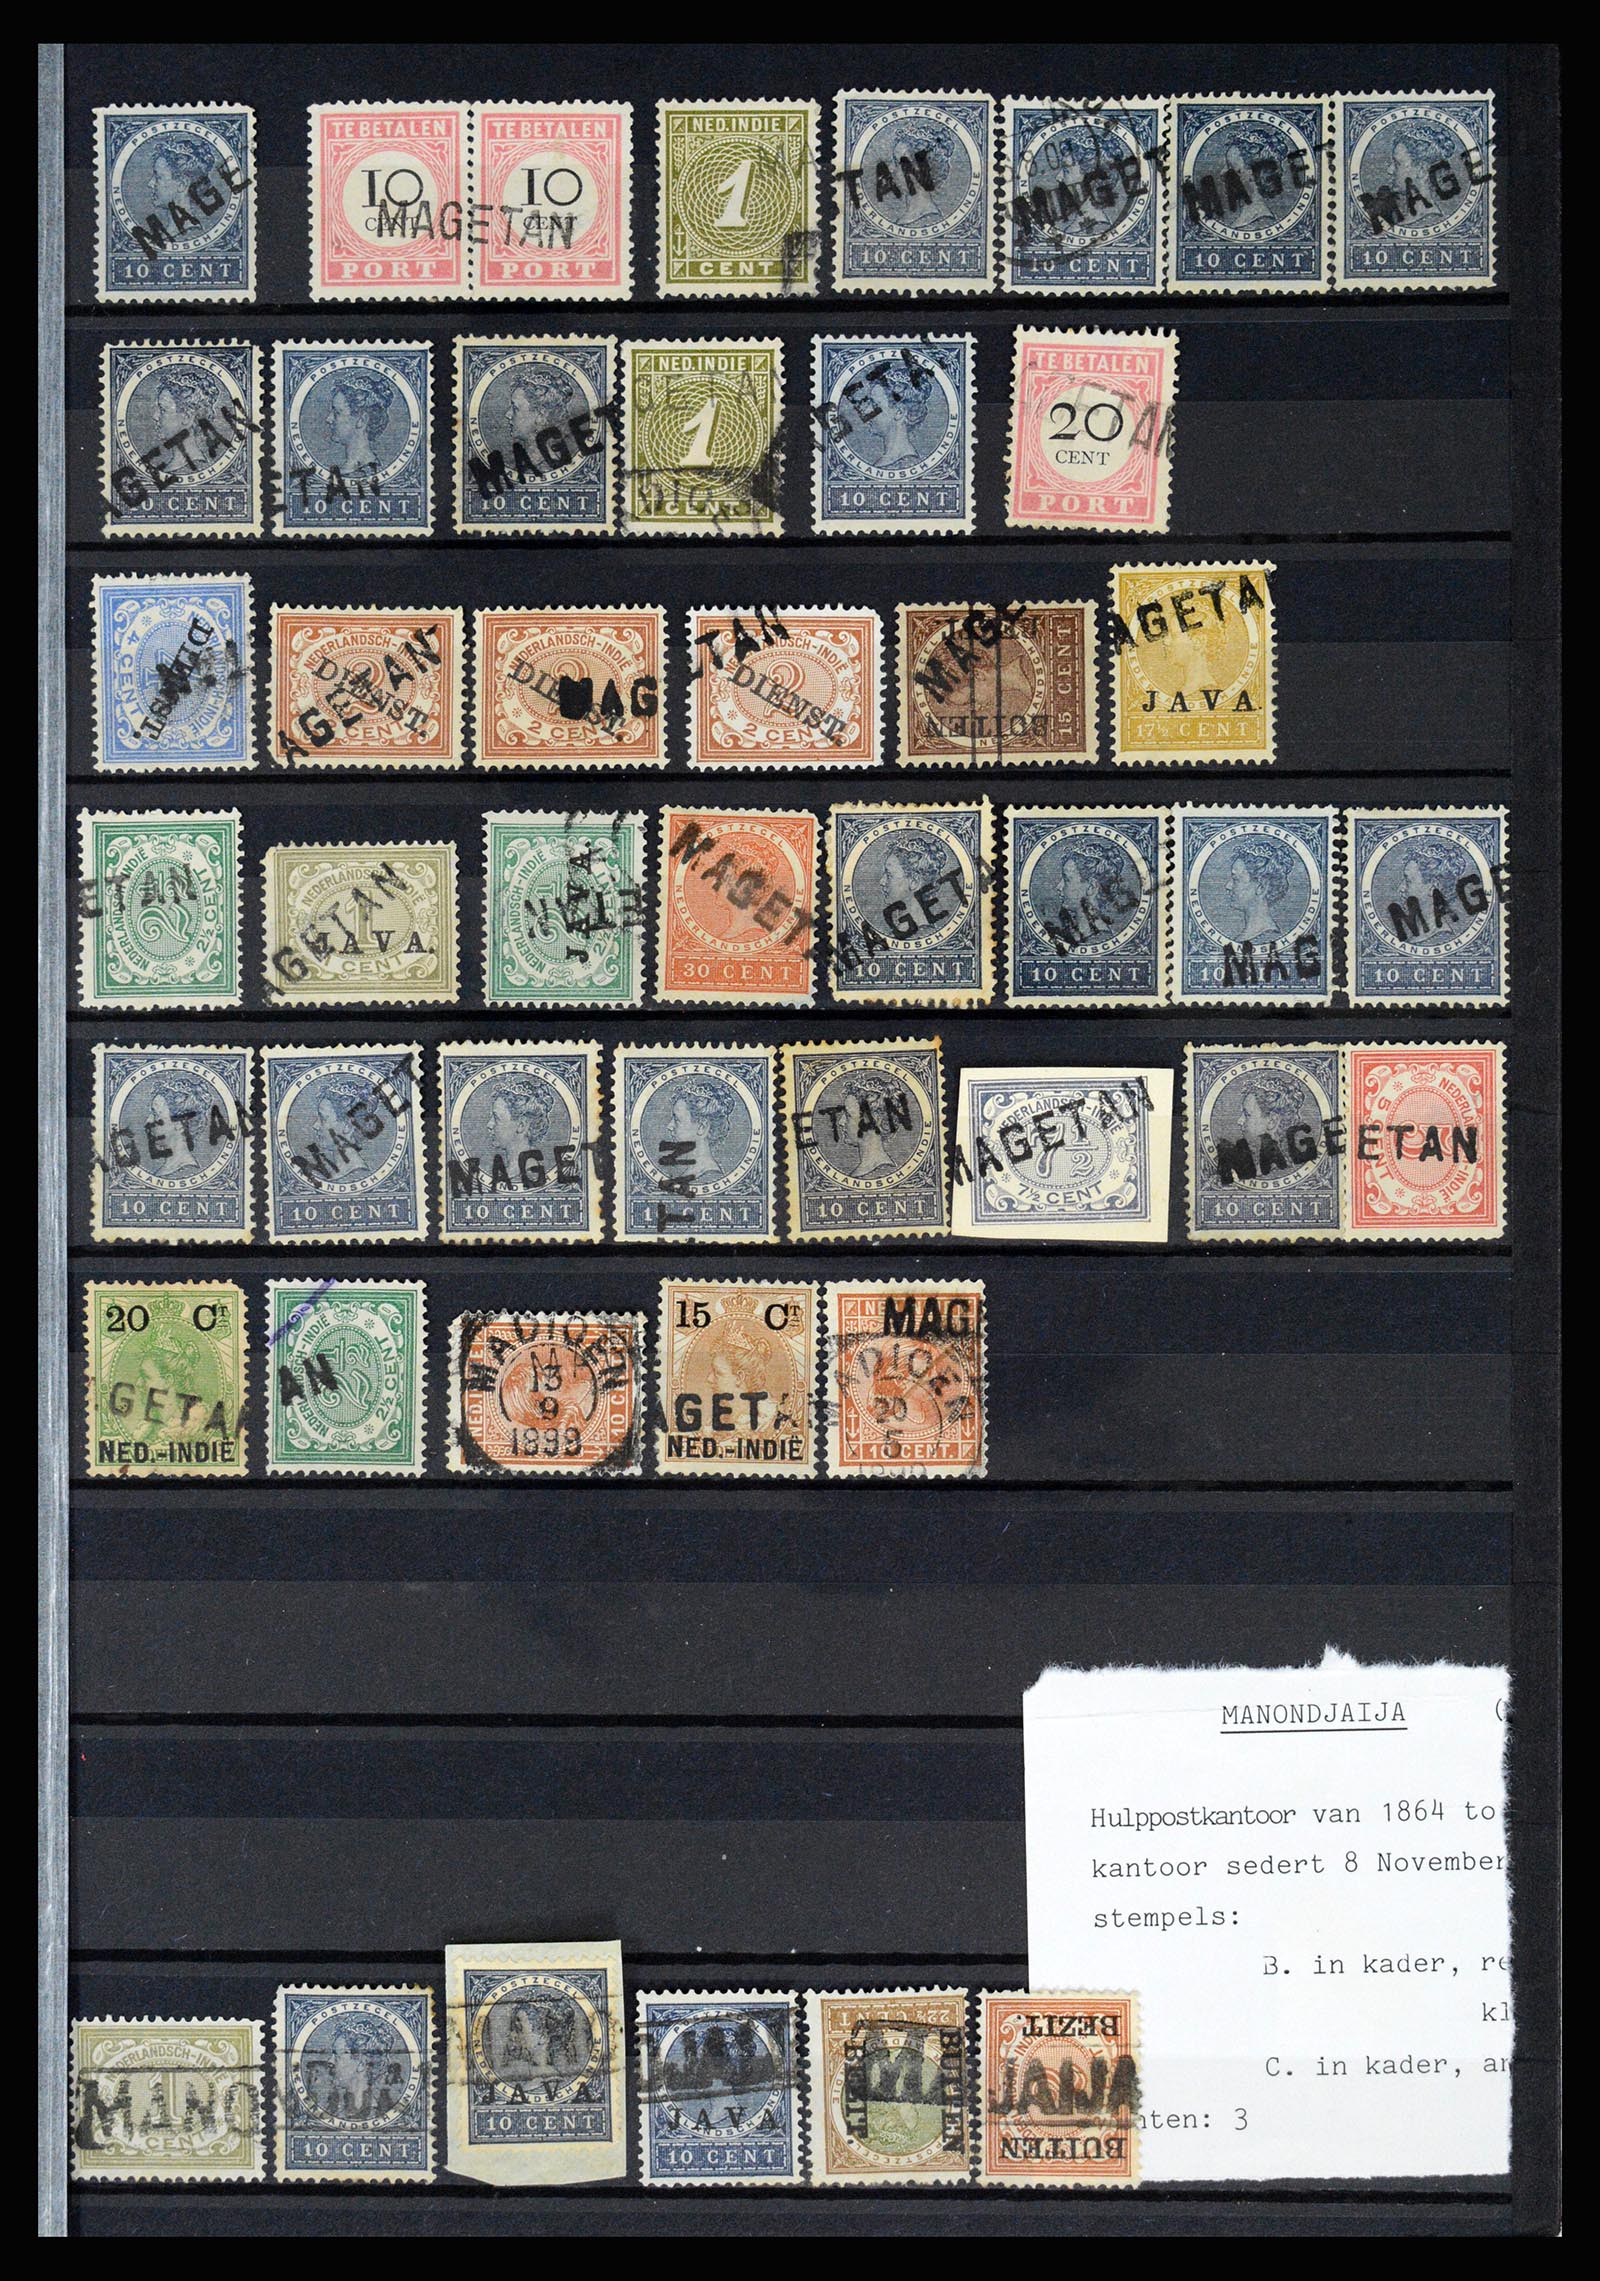 36512 043 - Stamp collection 36512 Nederlands Indië stempels 1872-1930.